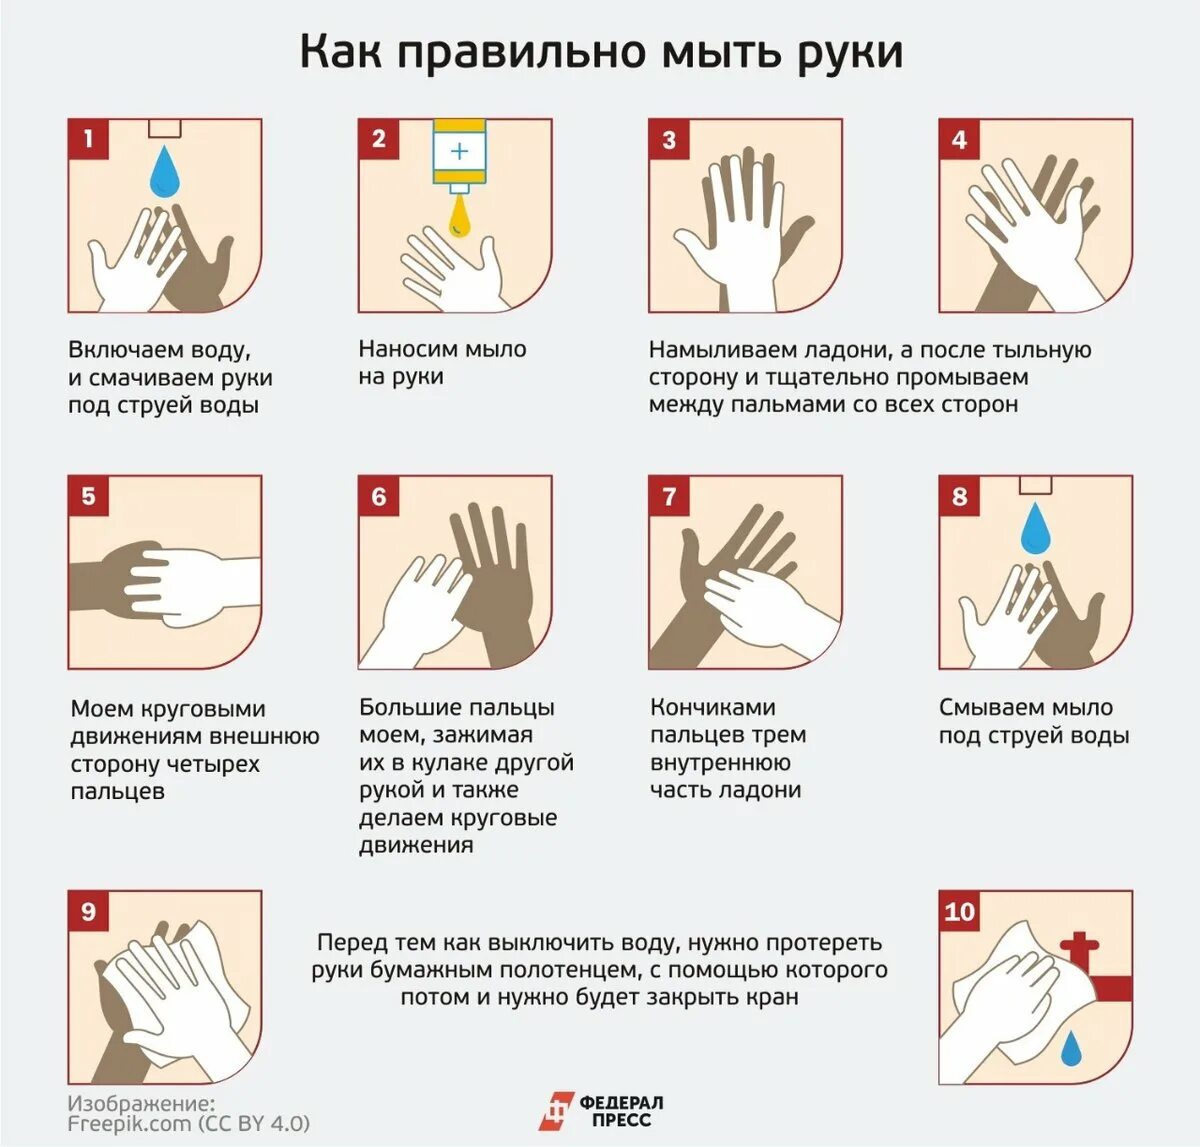 Как правильно мыть руки. КККМ правильн омыть руки. Памятка Моем руки правильно. КПК правилльнл мыть руки. Мытье рук относится к